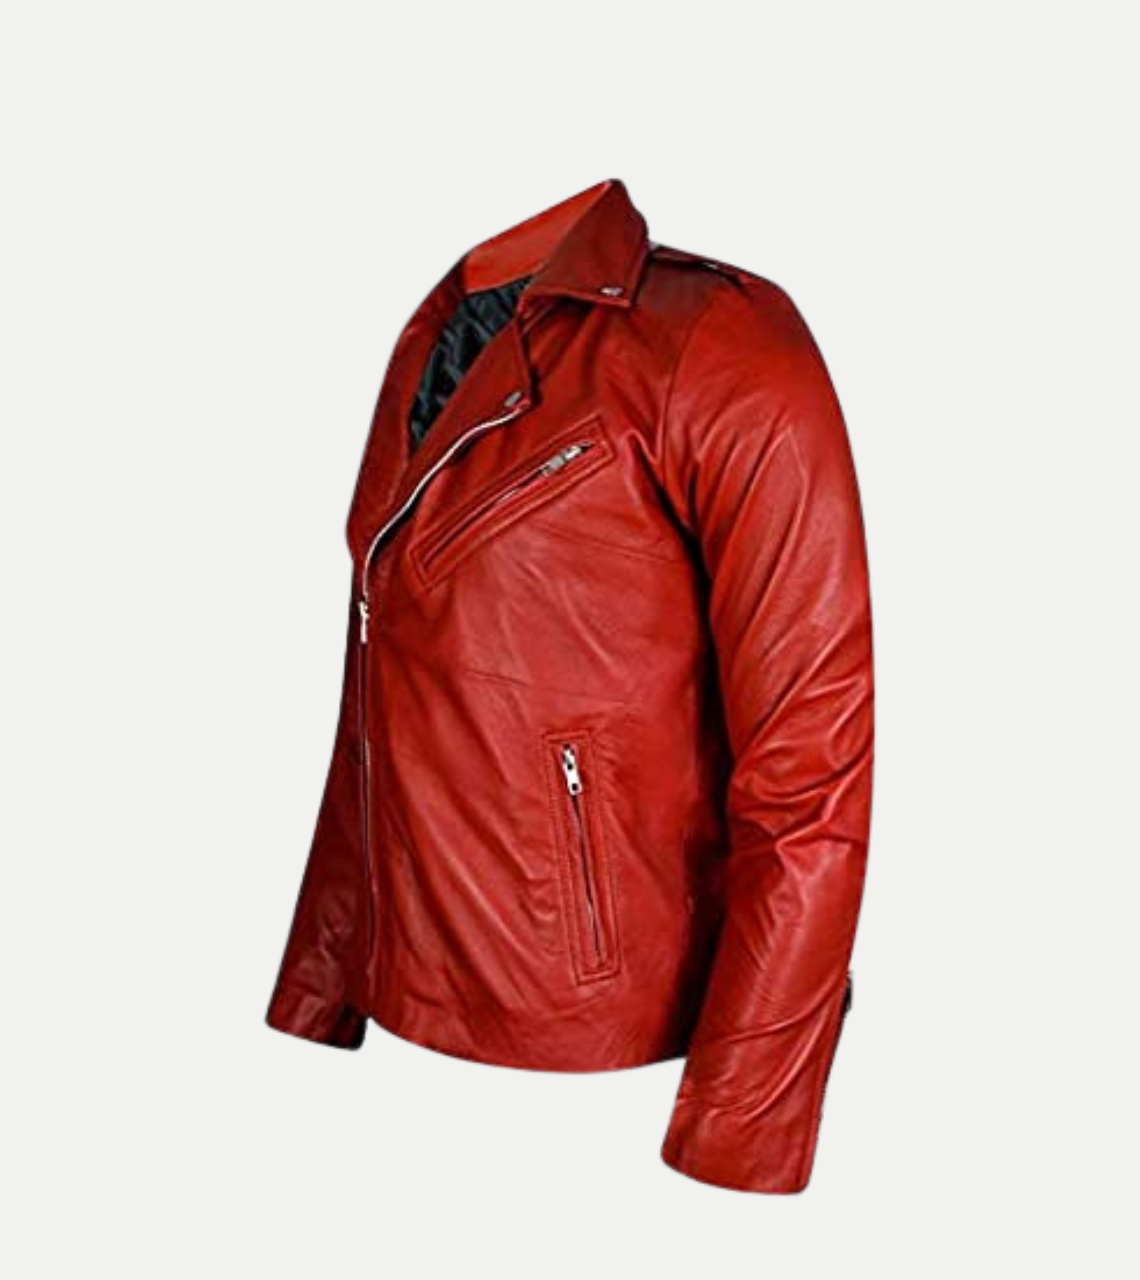 Fergal Devitt Red Leather Jacket For Men's